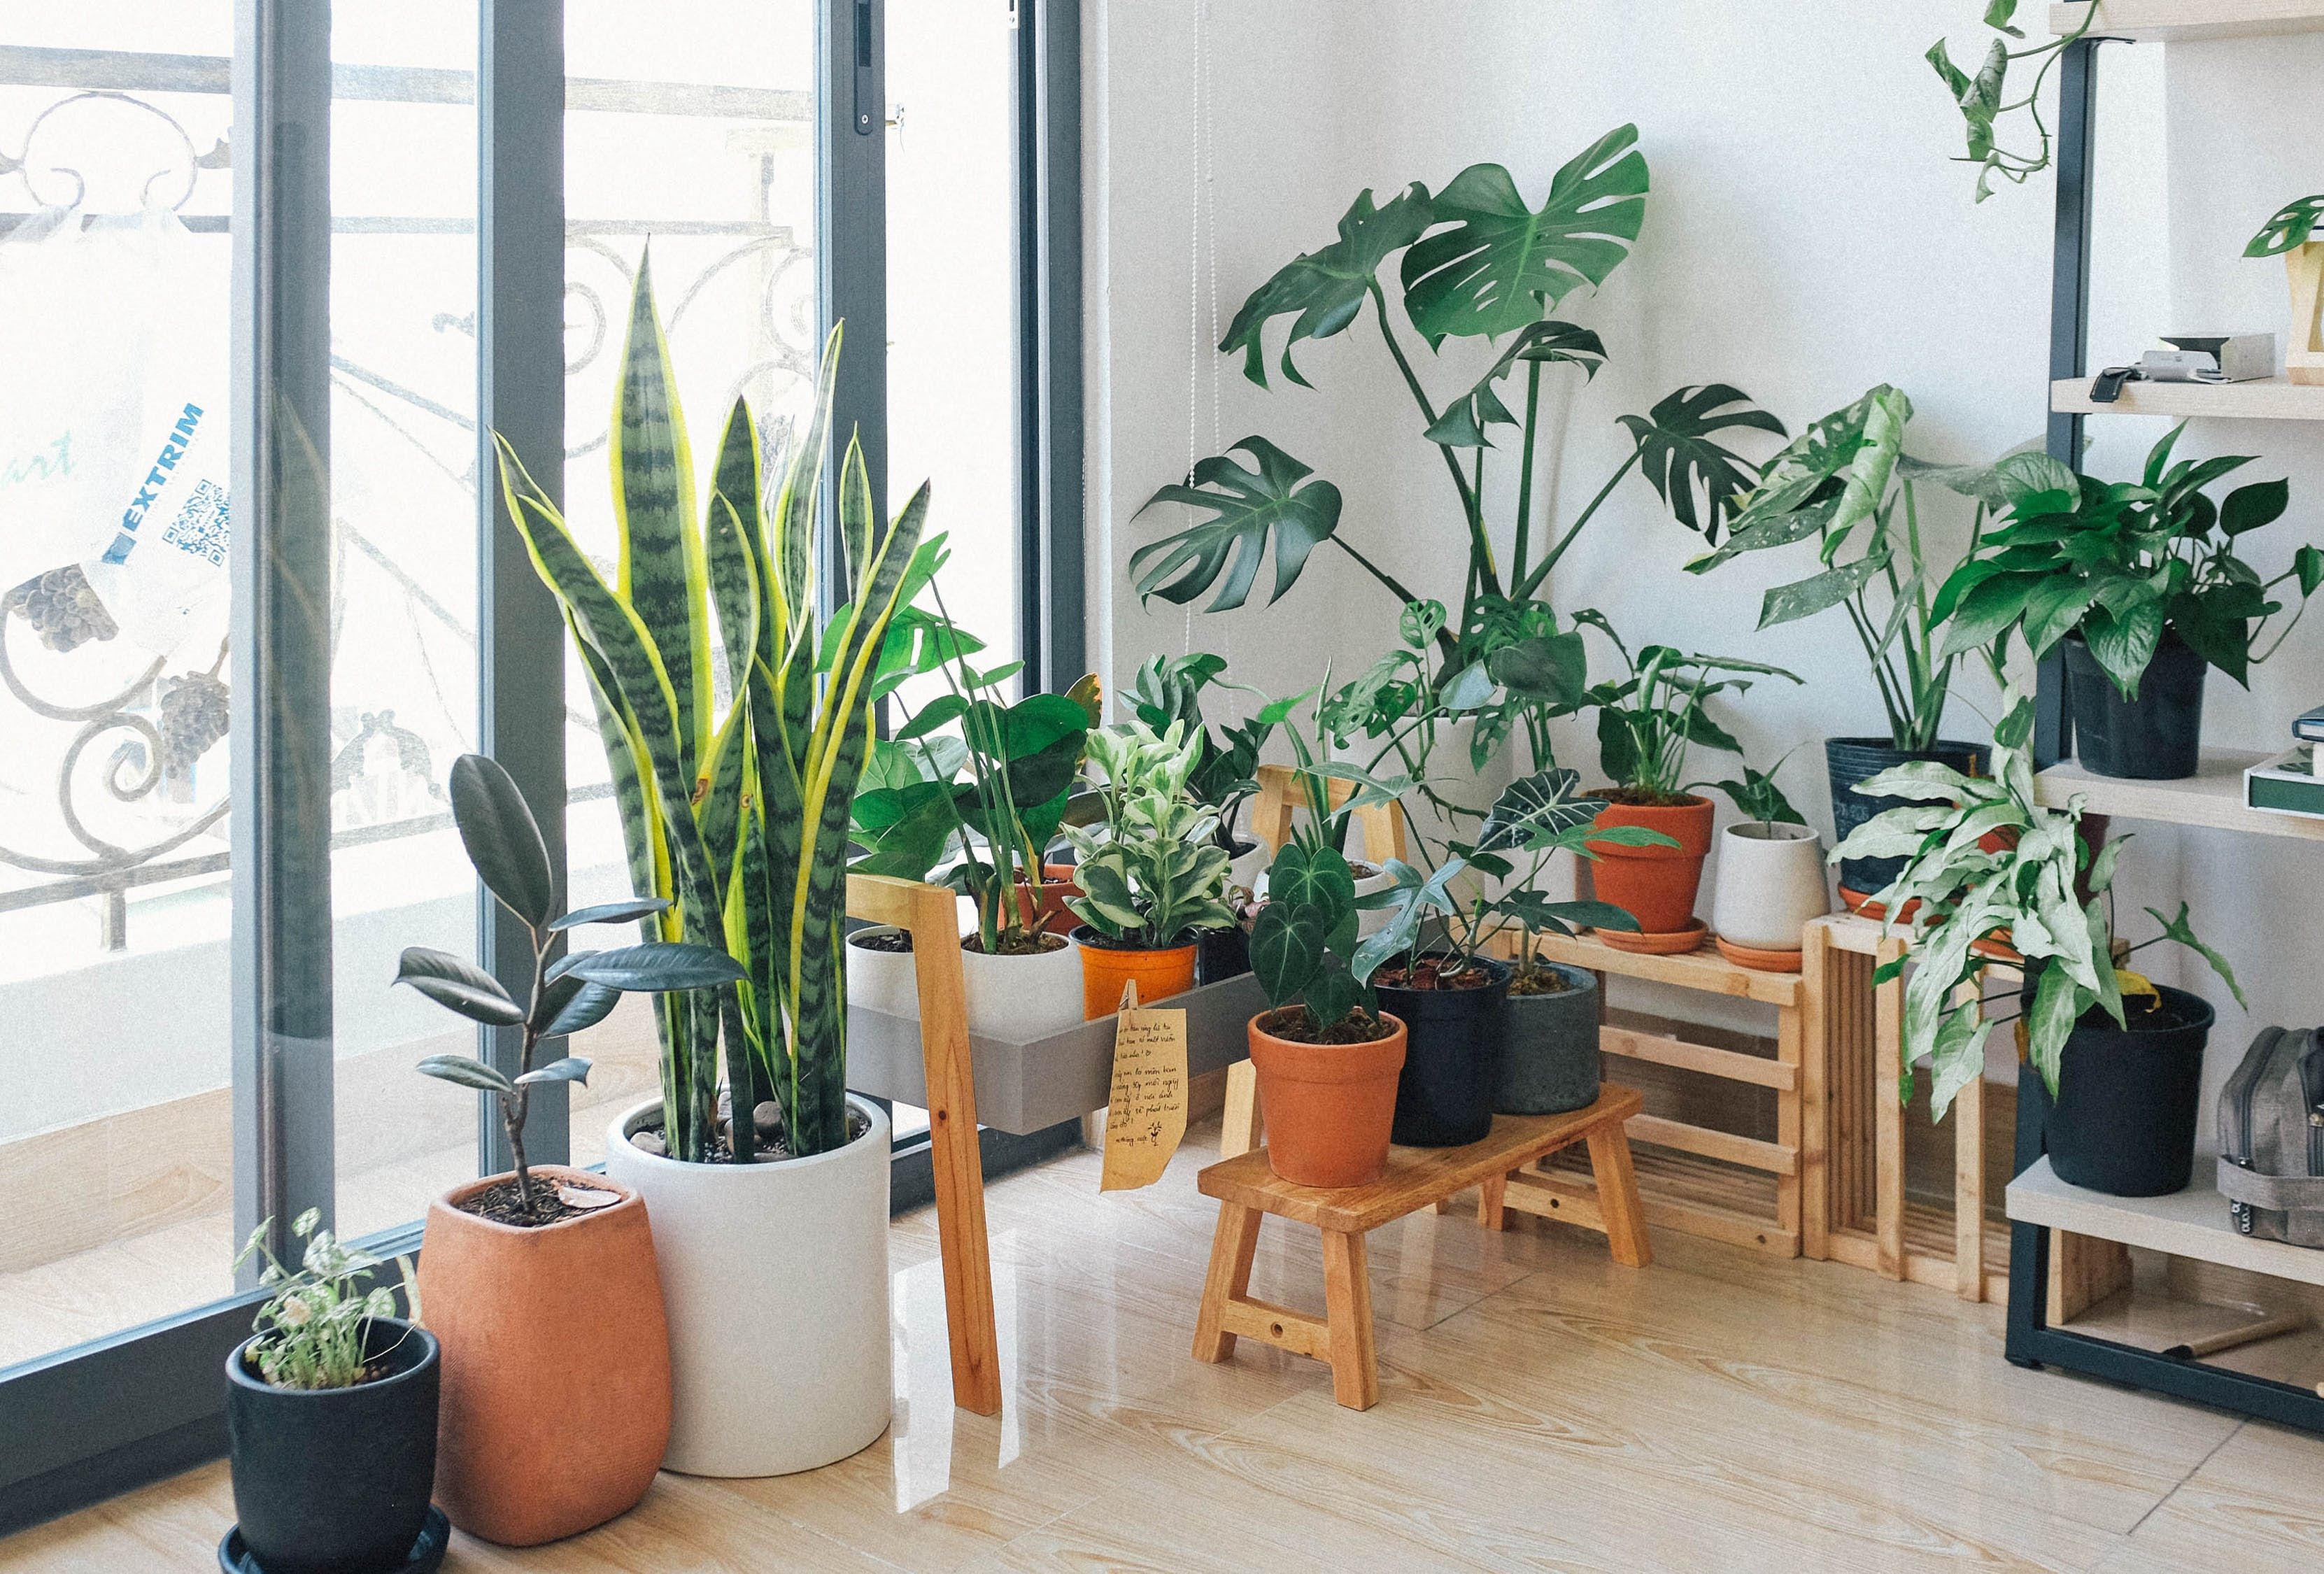 7 комнатных растений, которым нужно больше света в осенне-зимний период - Недвижимость